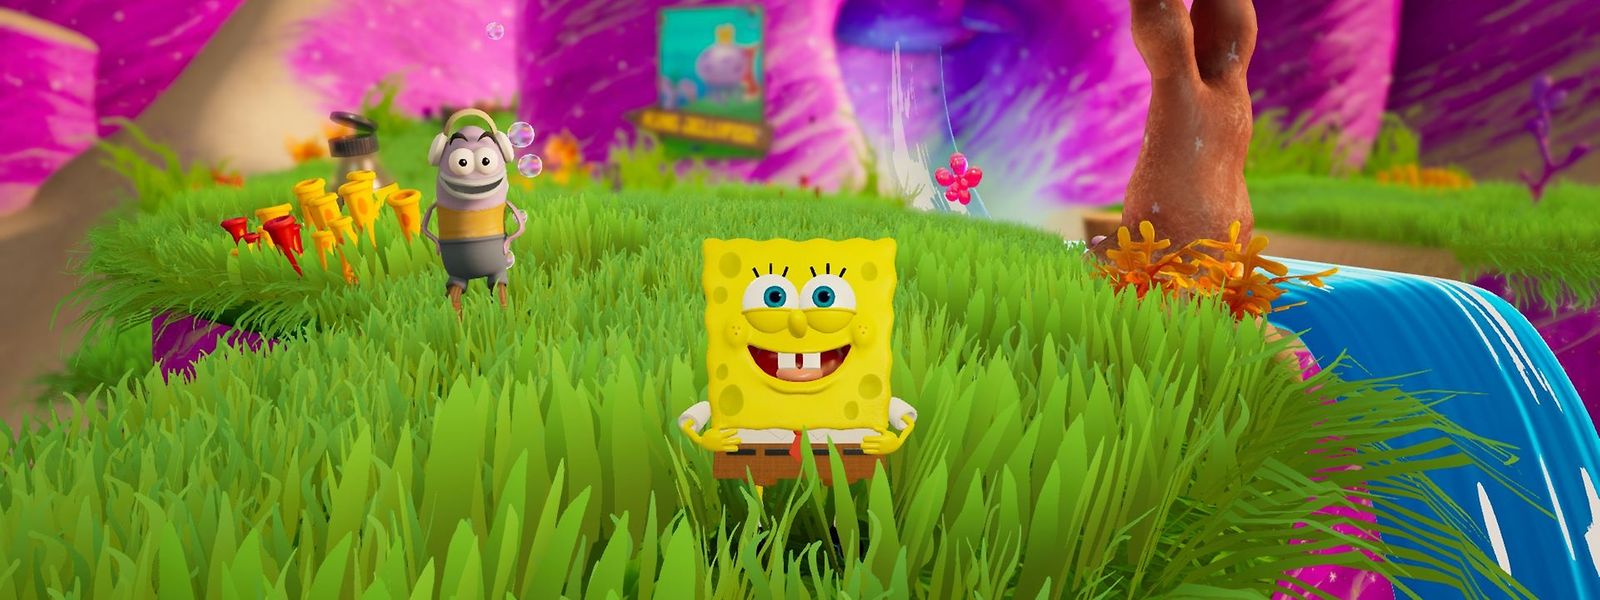 Bunt und durchgeknallt – das ist die Welt der heldenhaften Zeichentrickfigur. Das Spiel „SpongeBob SquarePants: Battle for Bikini Bottom – Rehydrated“ ist erhältlich für Xbox One, PS4, Switch und PC.